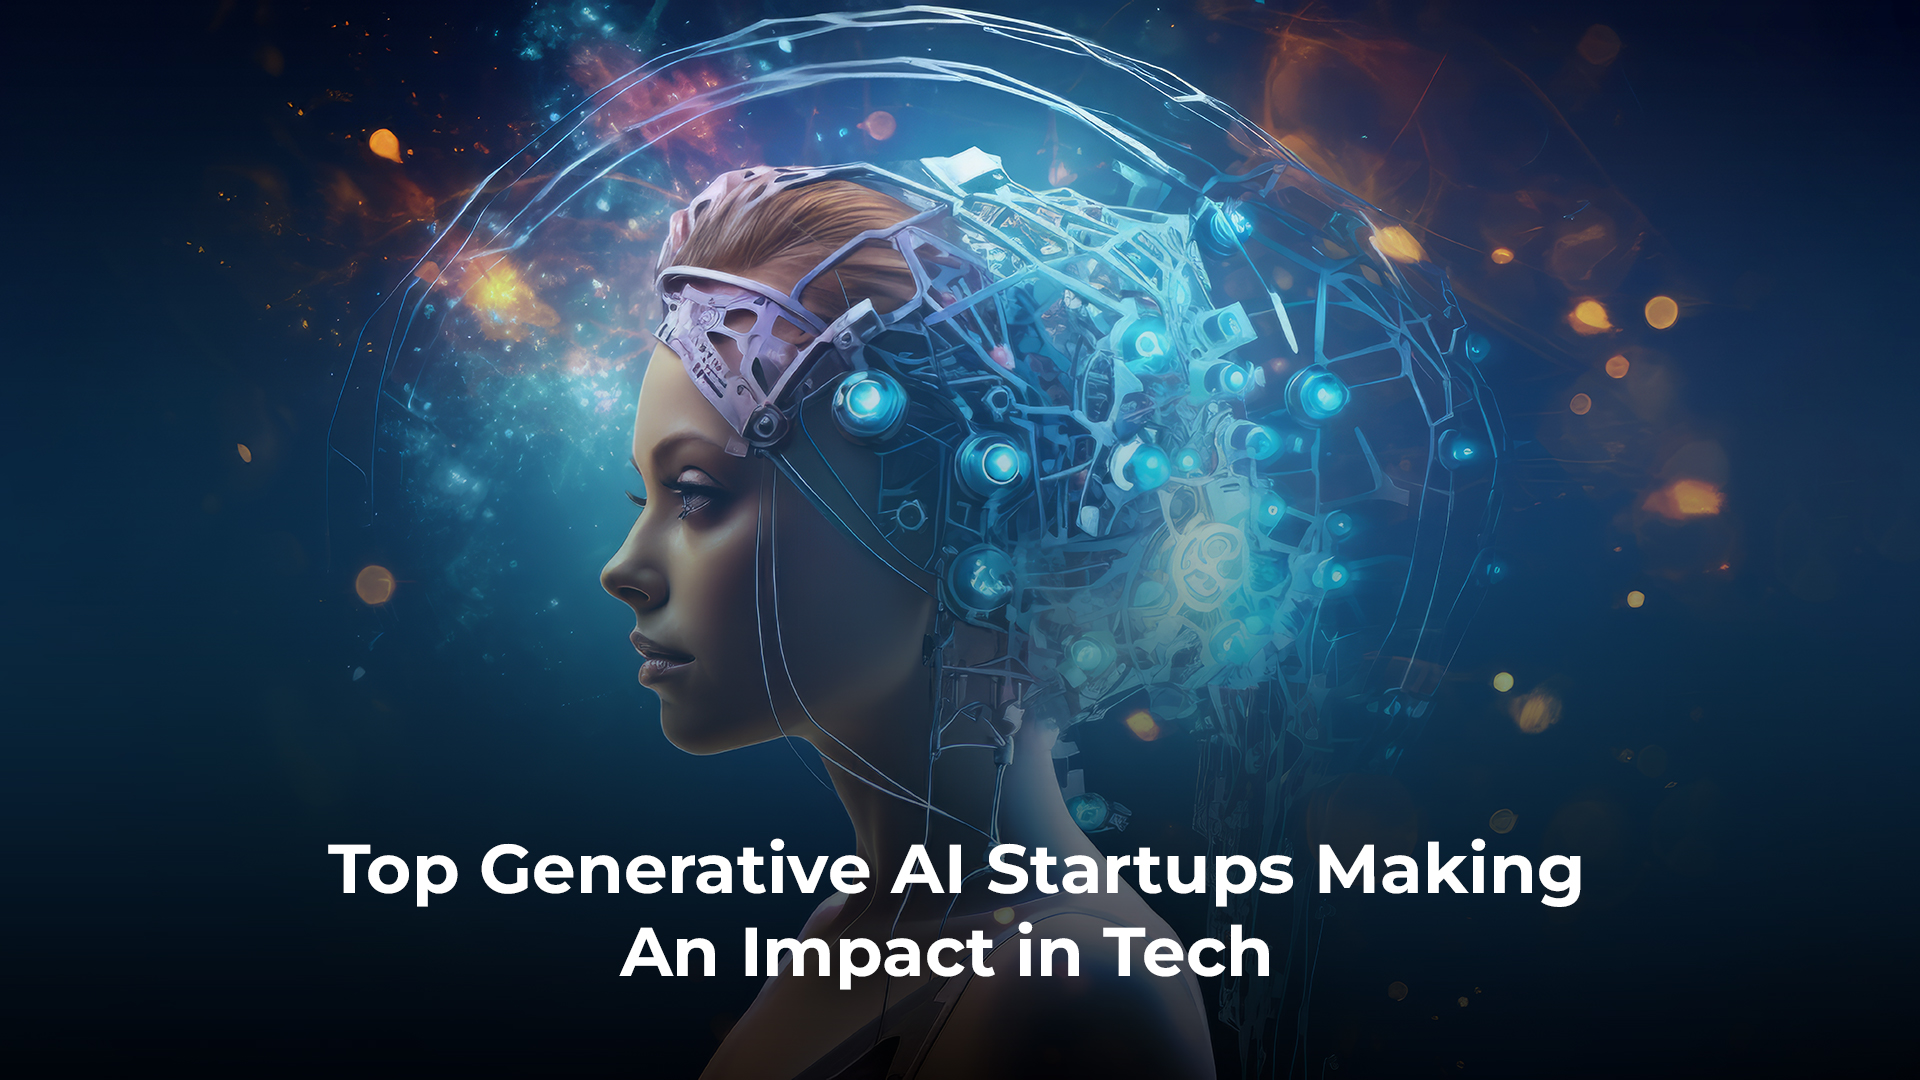 Top Generative AI Startups Making an Impact in Tech